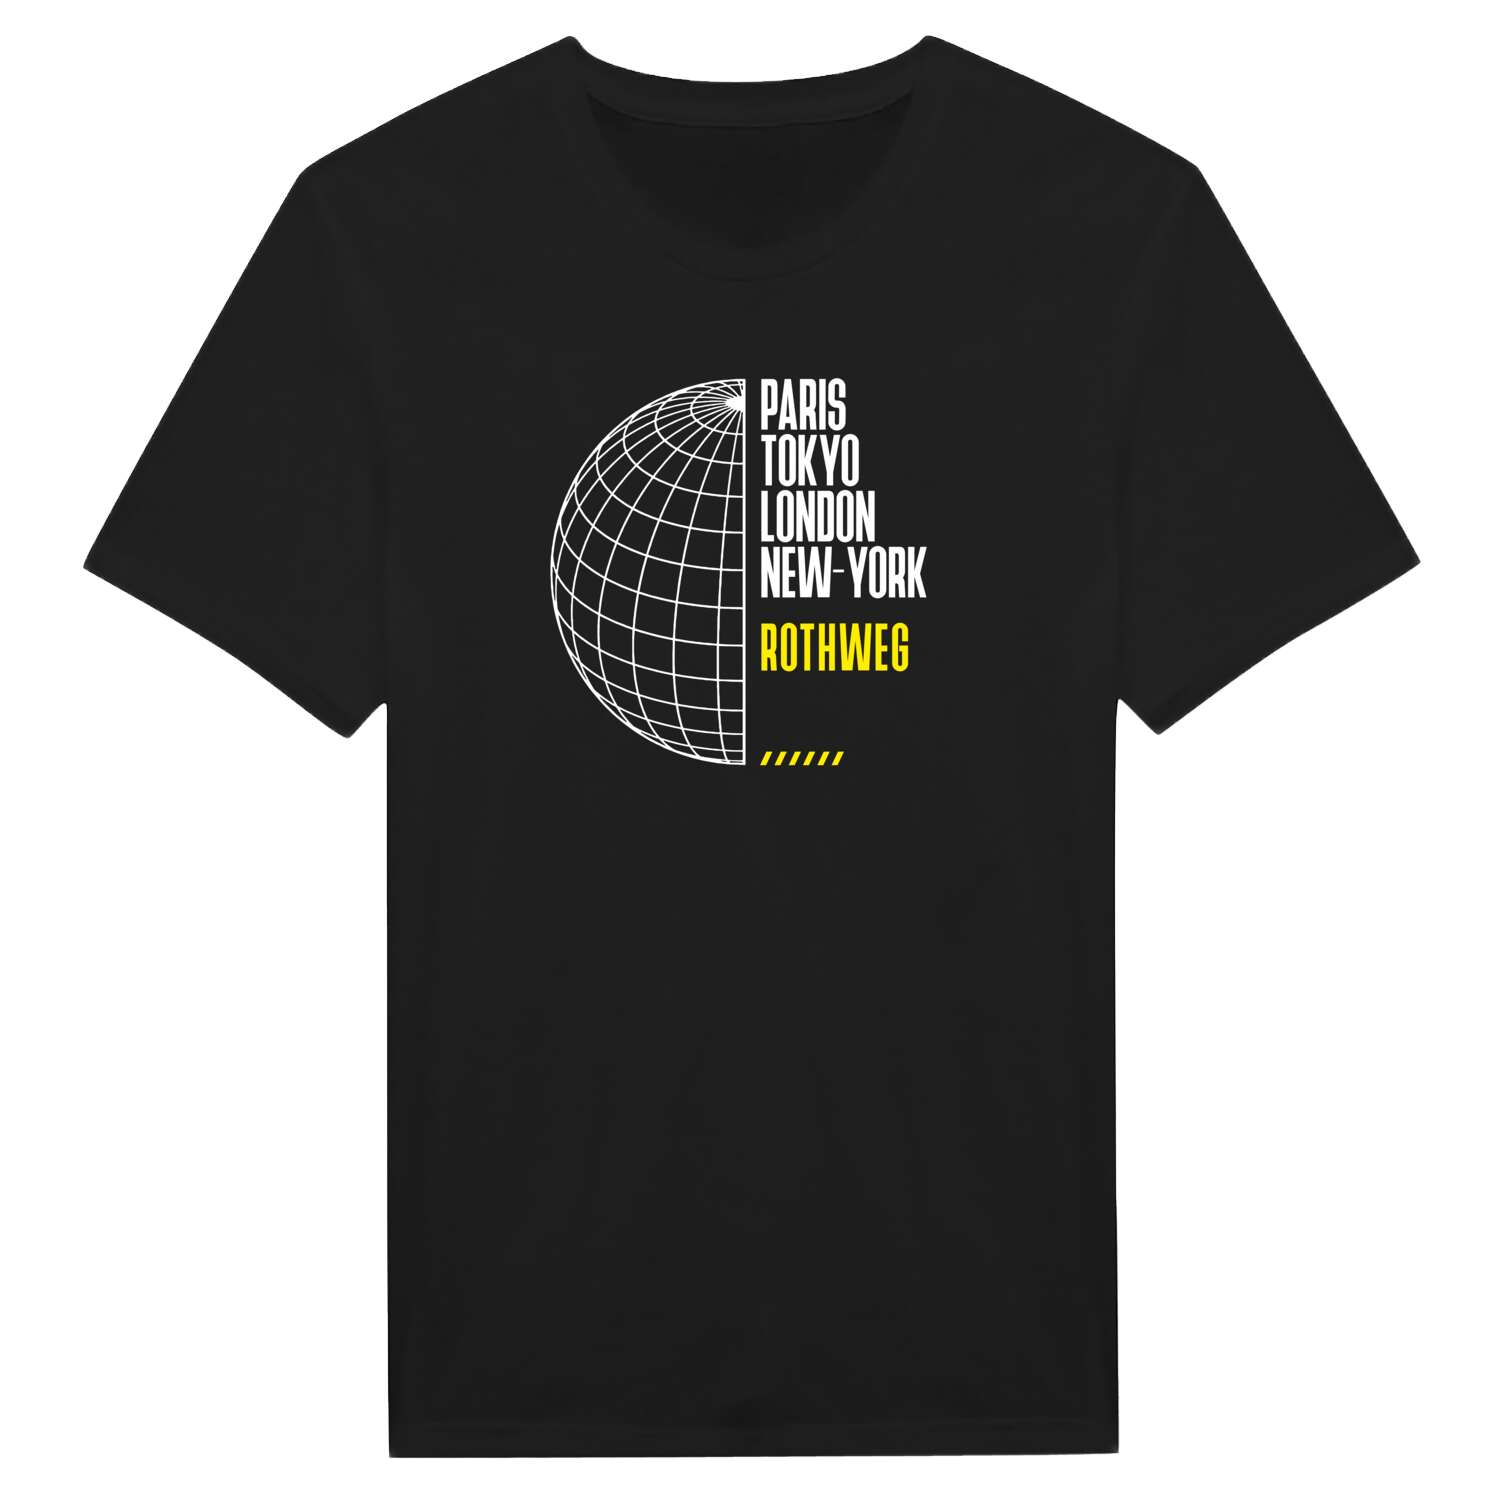 Rothweg T-Shirt »Paris Tokyo London«